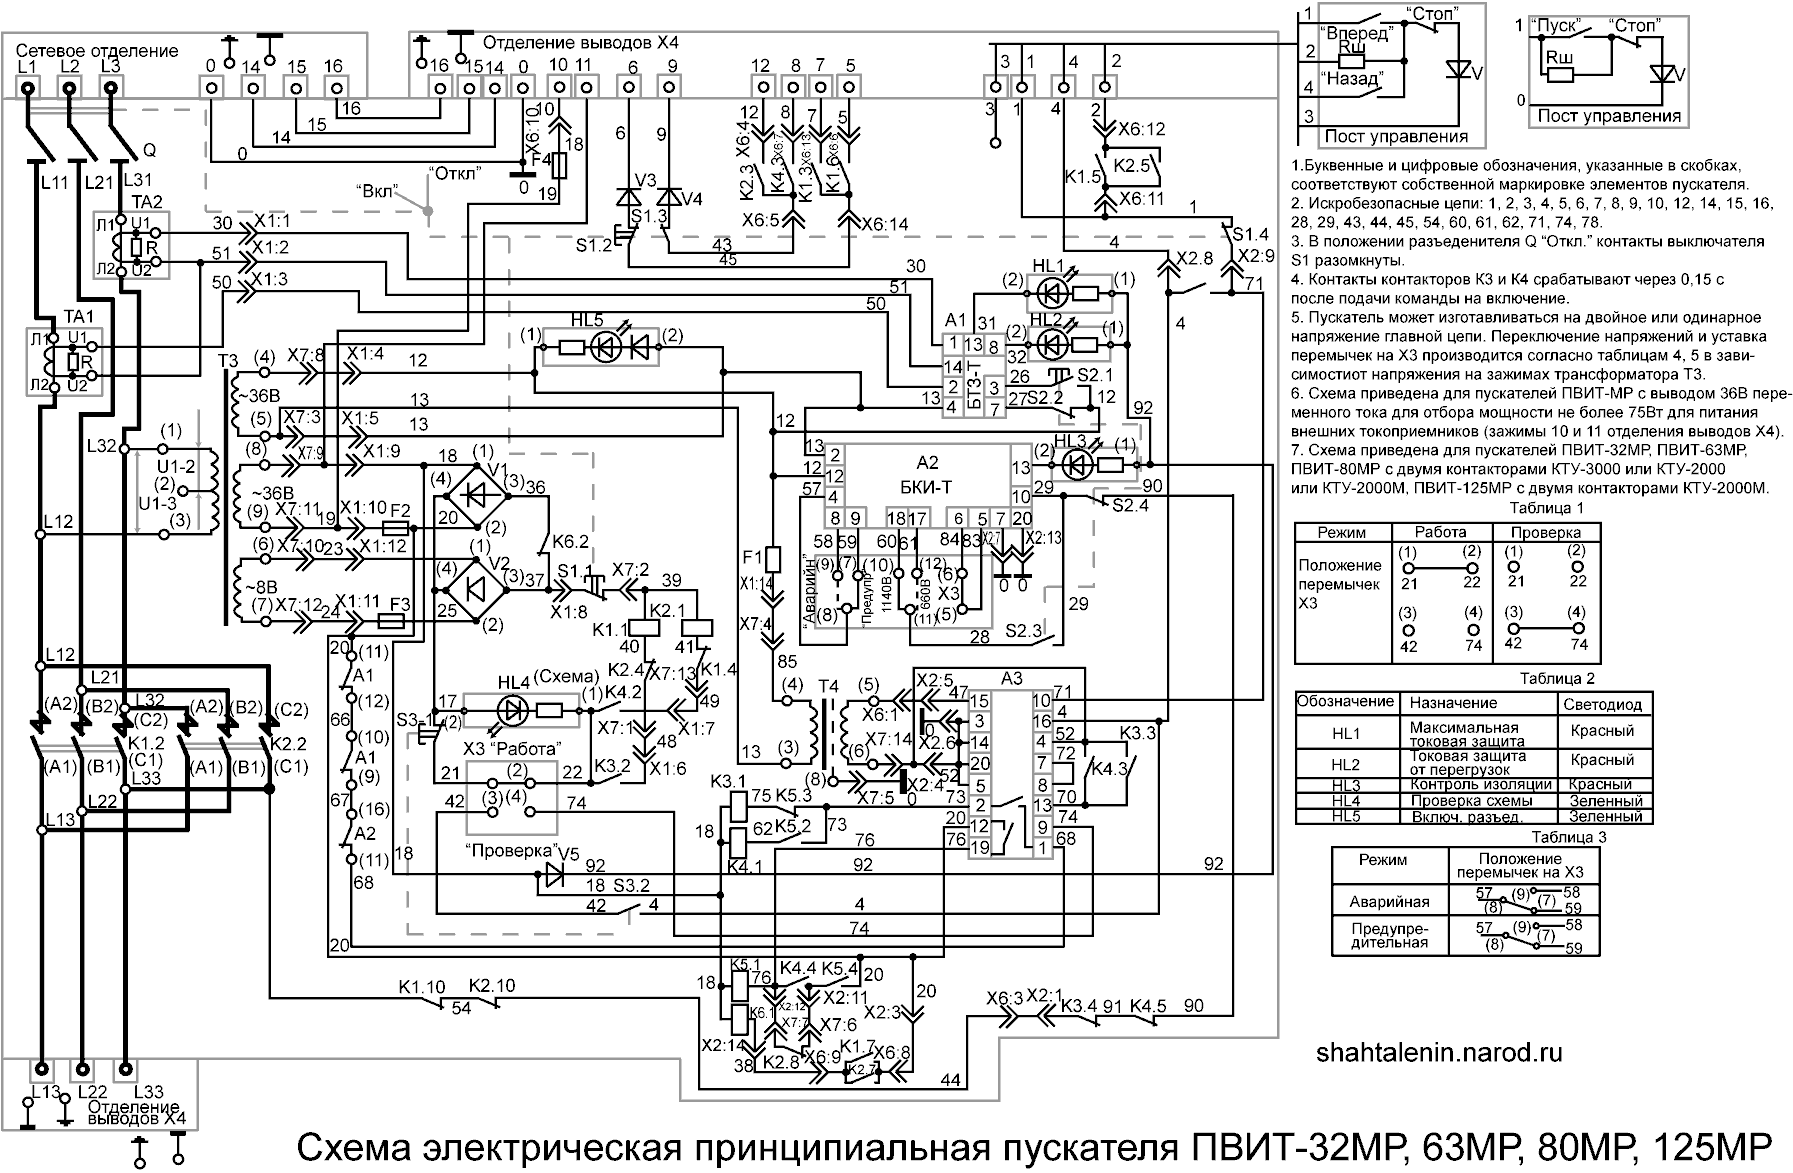 Схема электрическая принципиальная ПВИТ-32МР, 63МР, 80МР, 125МР